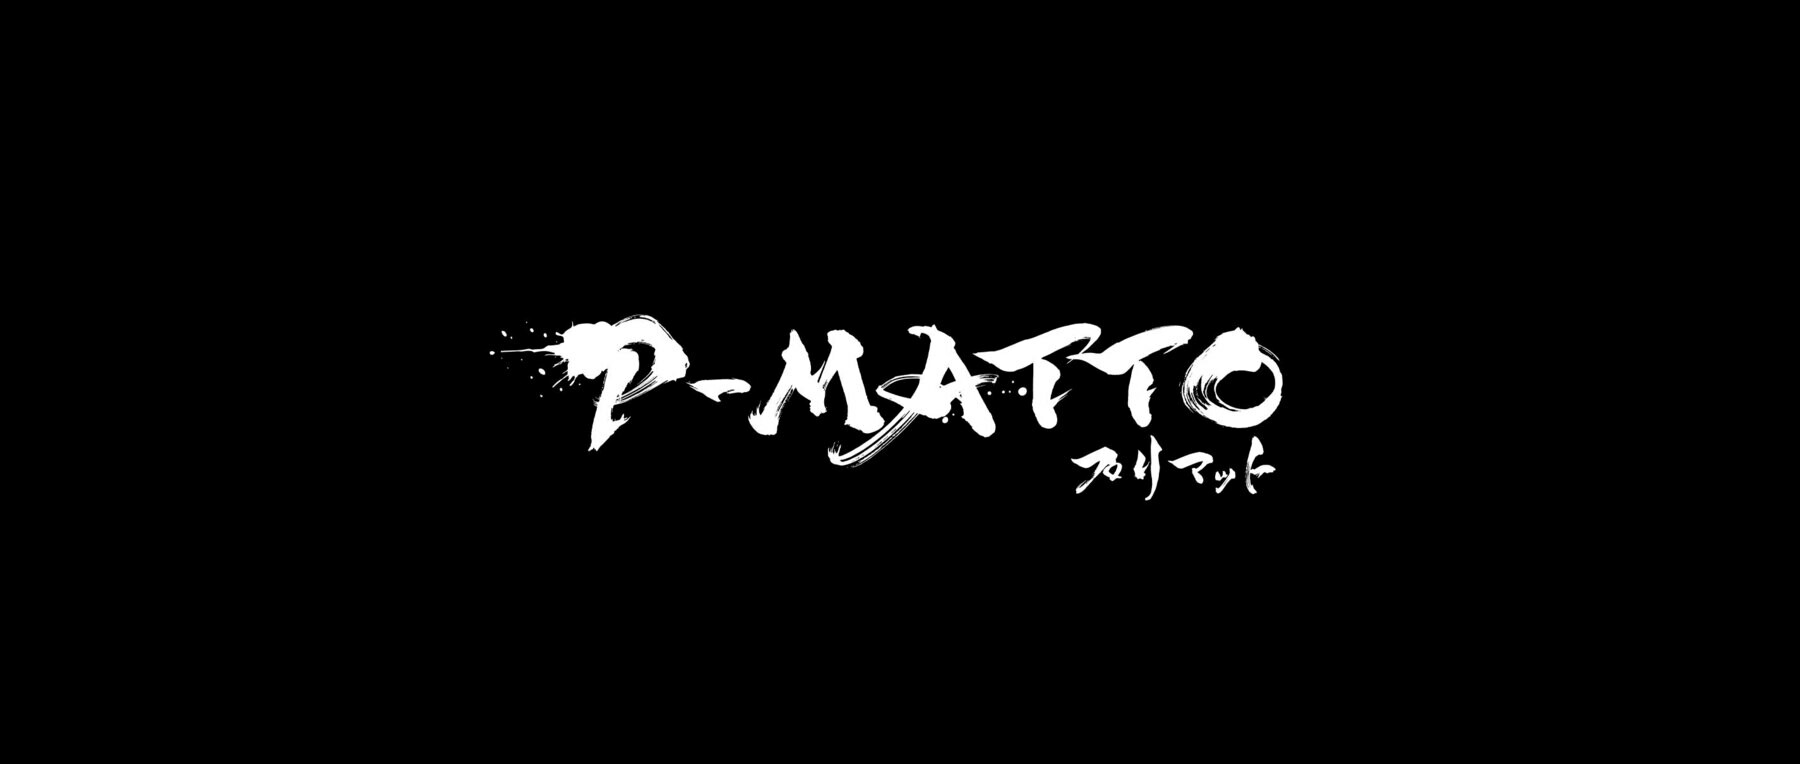 P-MATTO (Former name:DAL-MATTO)'s image